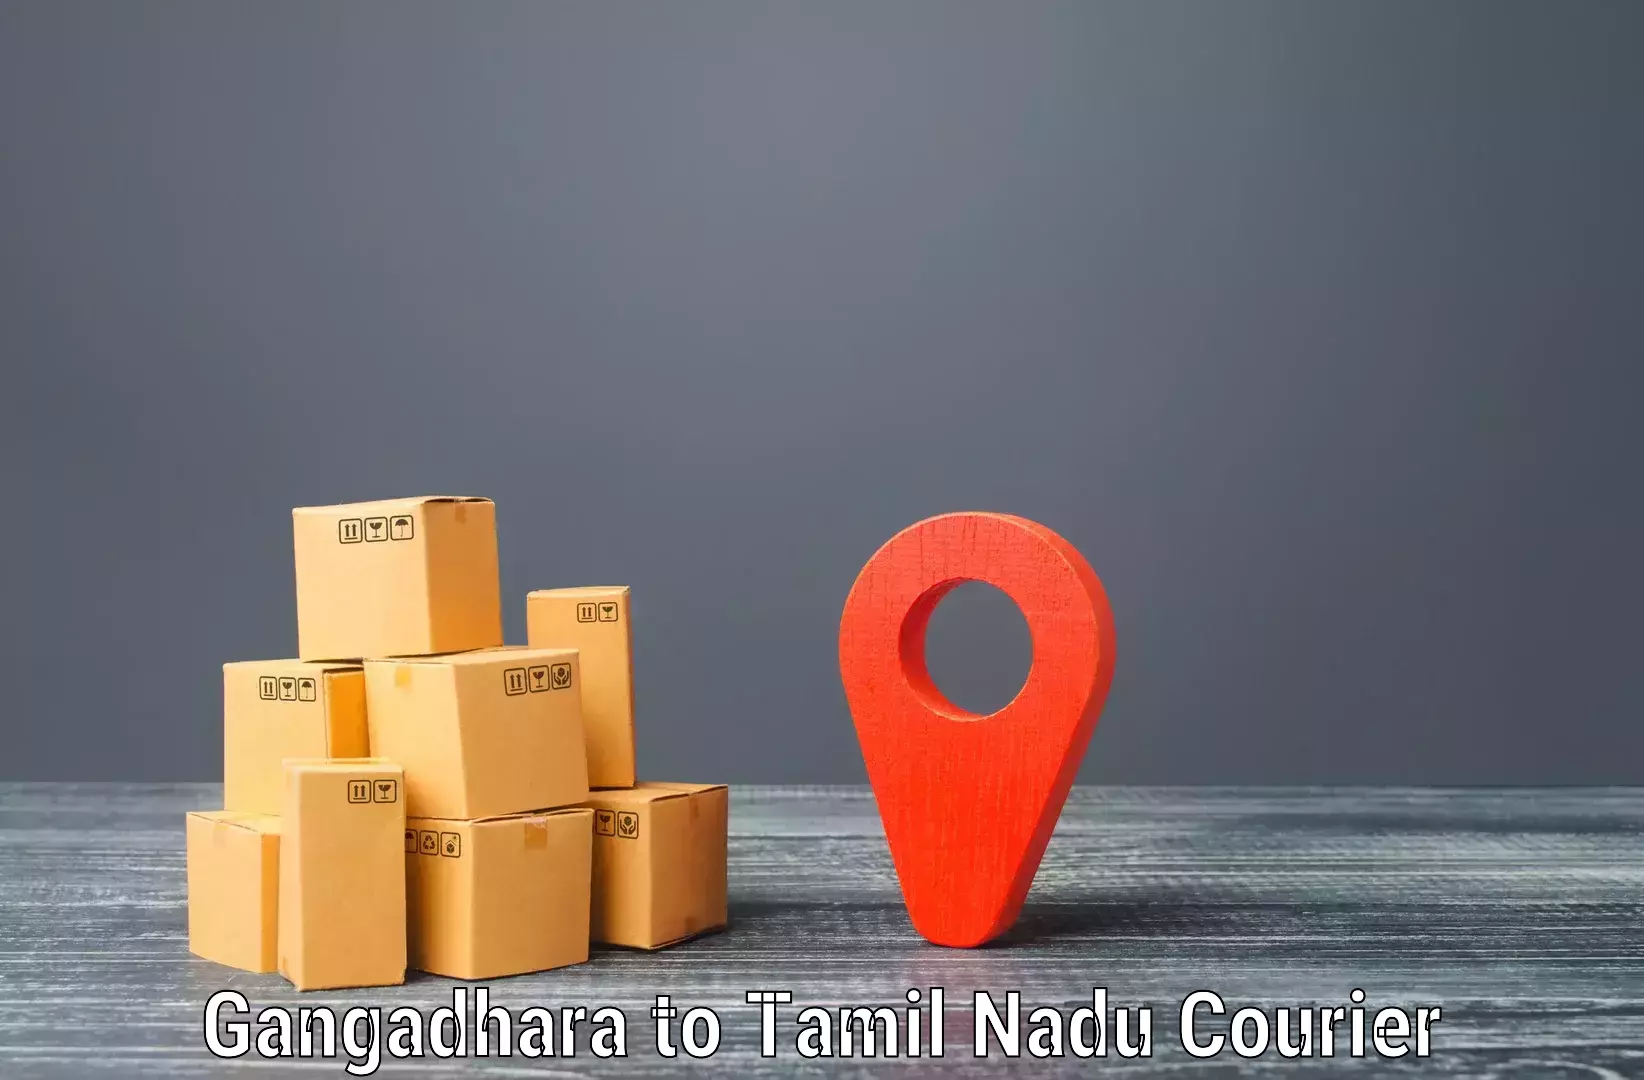 Modern courier technology Gangadhara to Perambalur